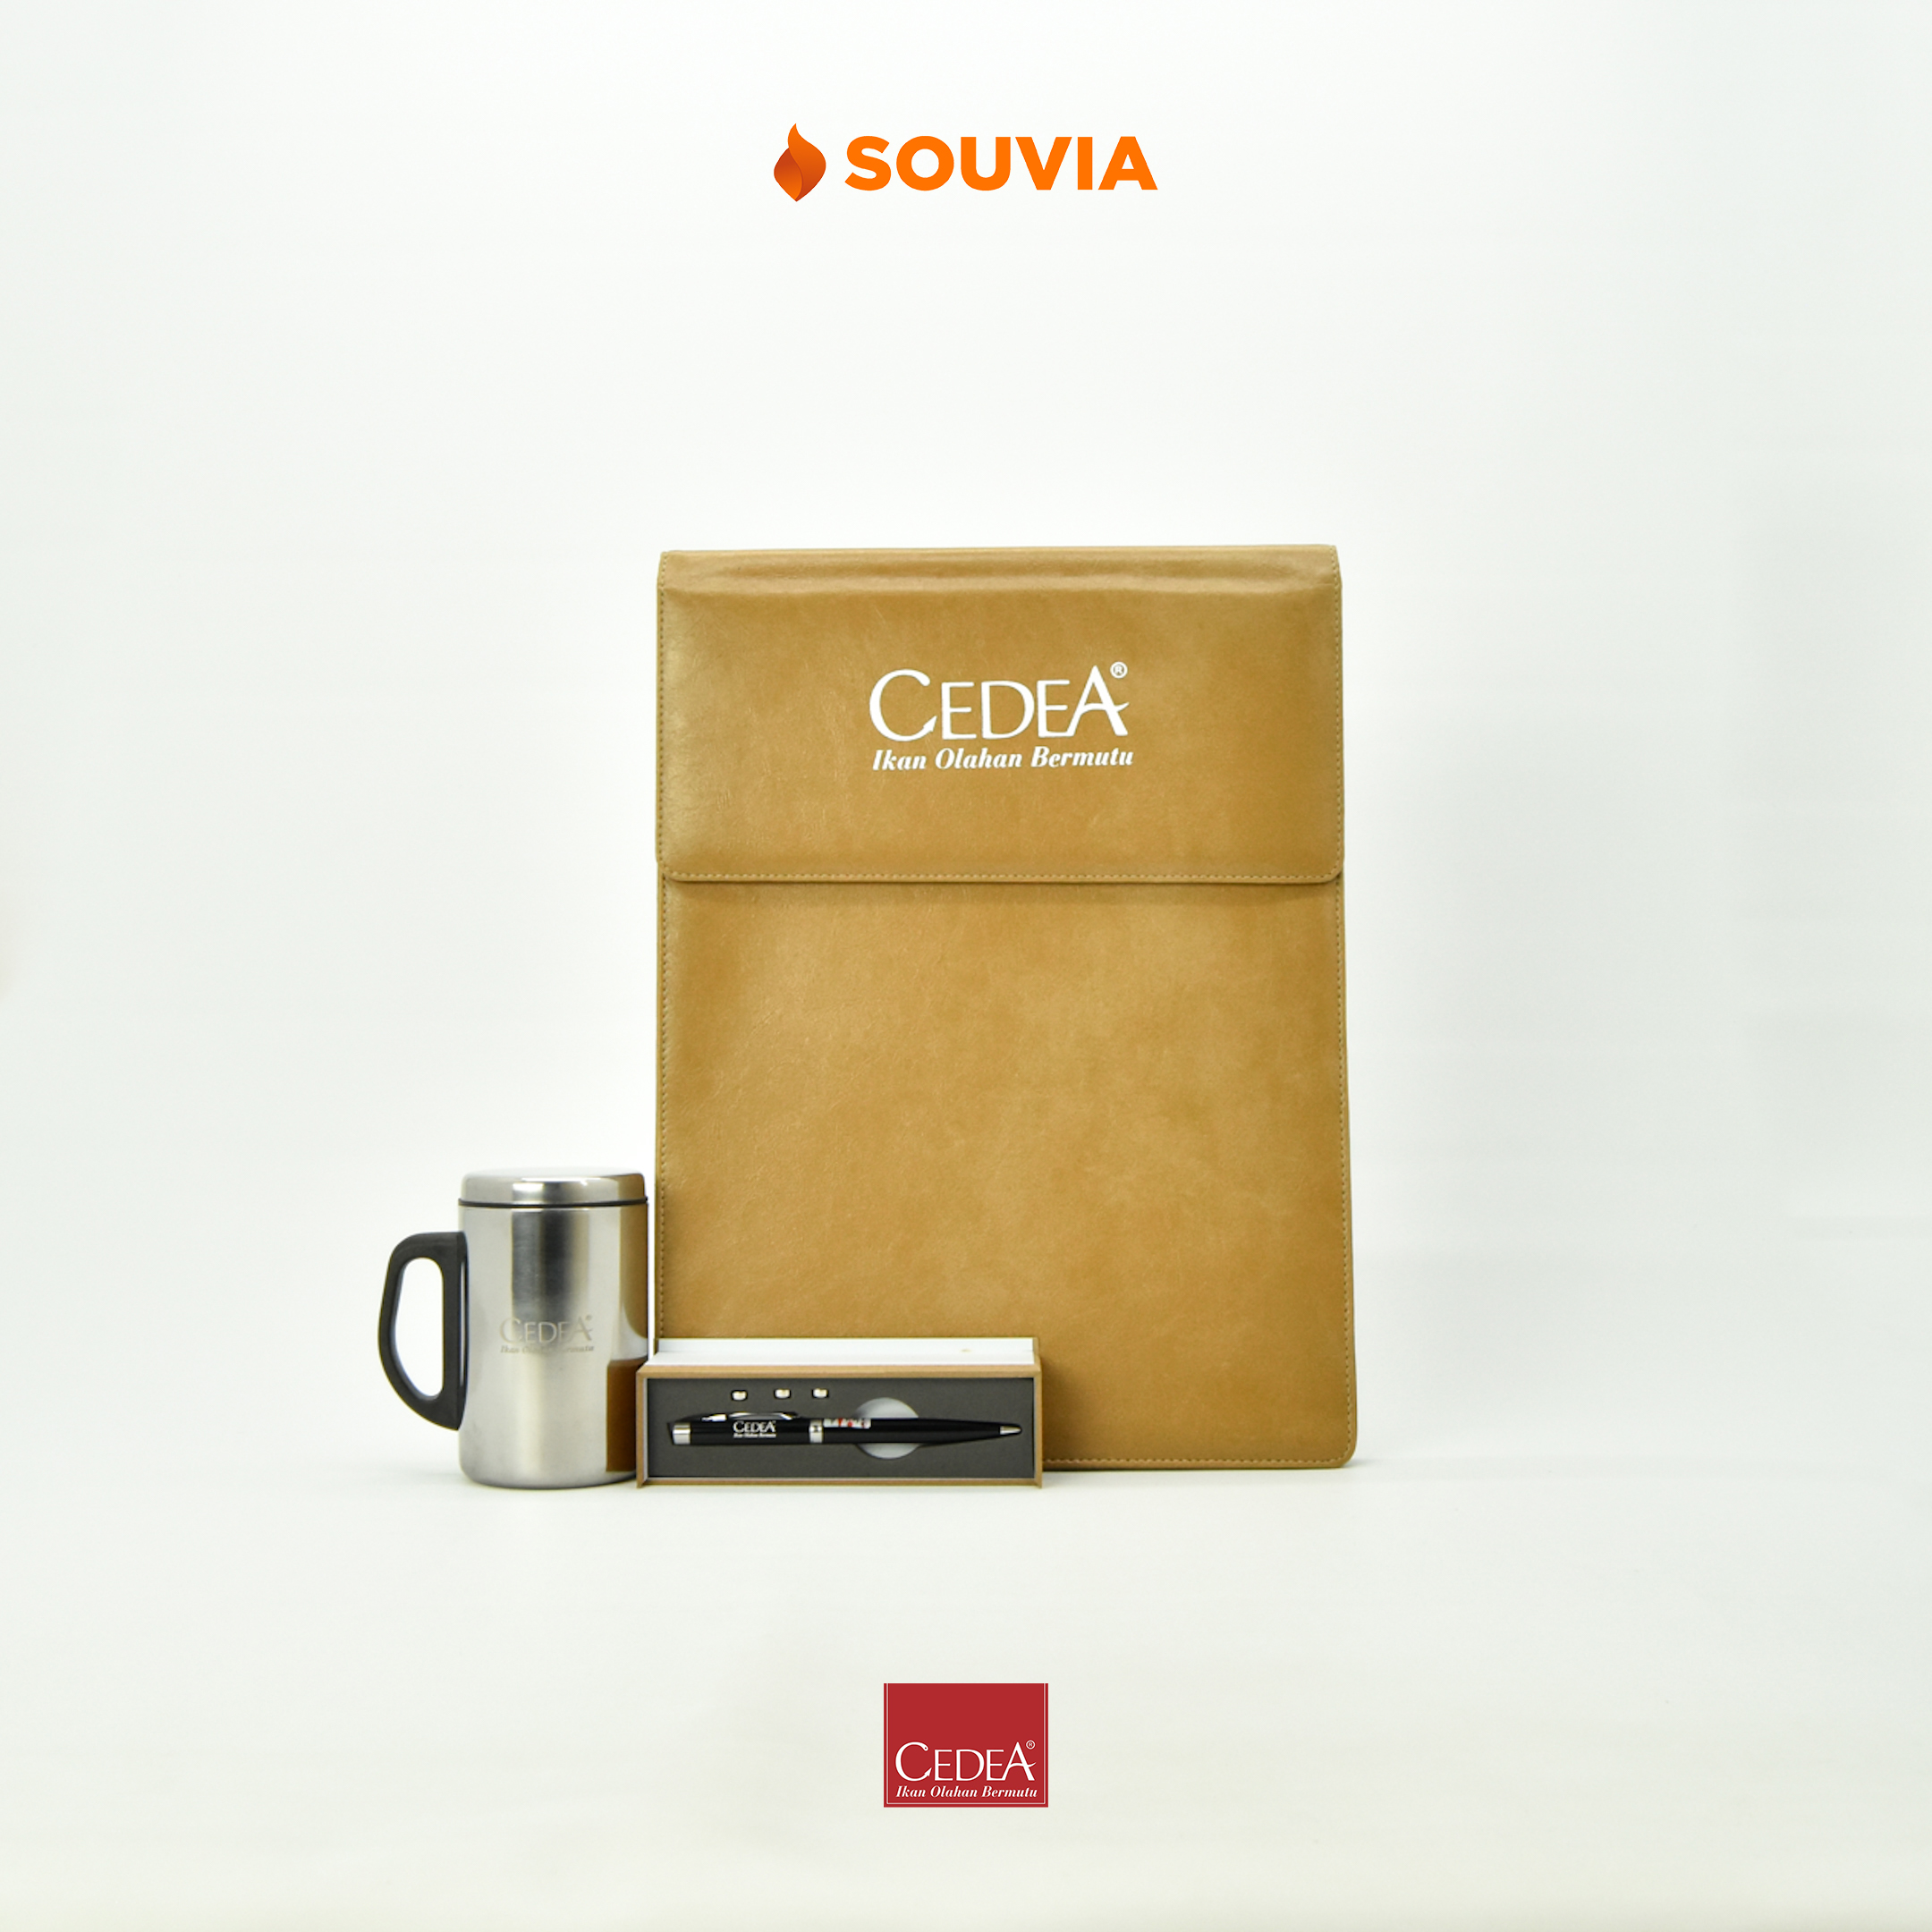 Produk SOUVIA yang dipesan oleh CEDEA. Terdiri dari laptop sleeve Thine, pulpen Parker, dan mug Reliable.